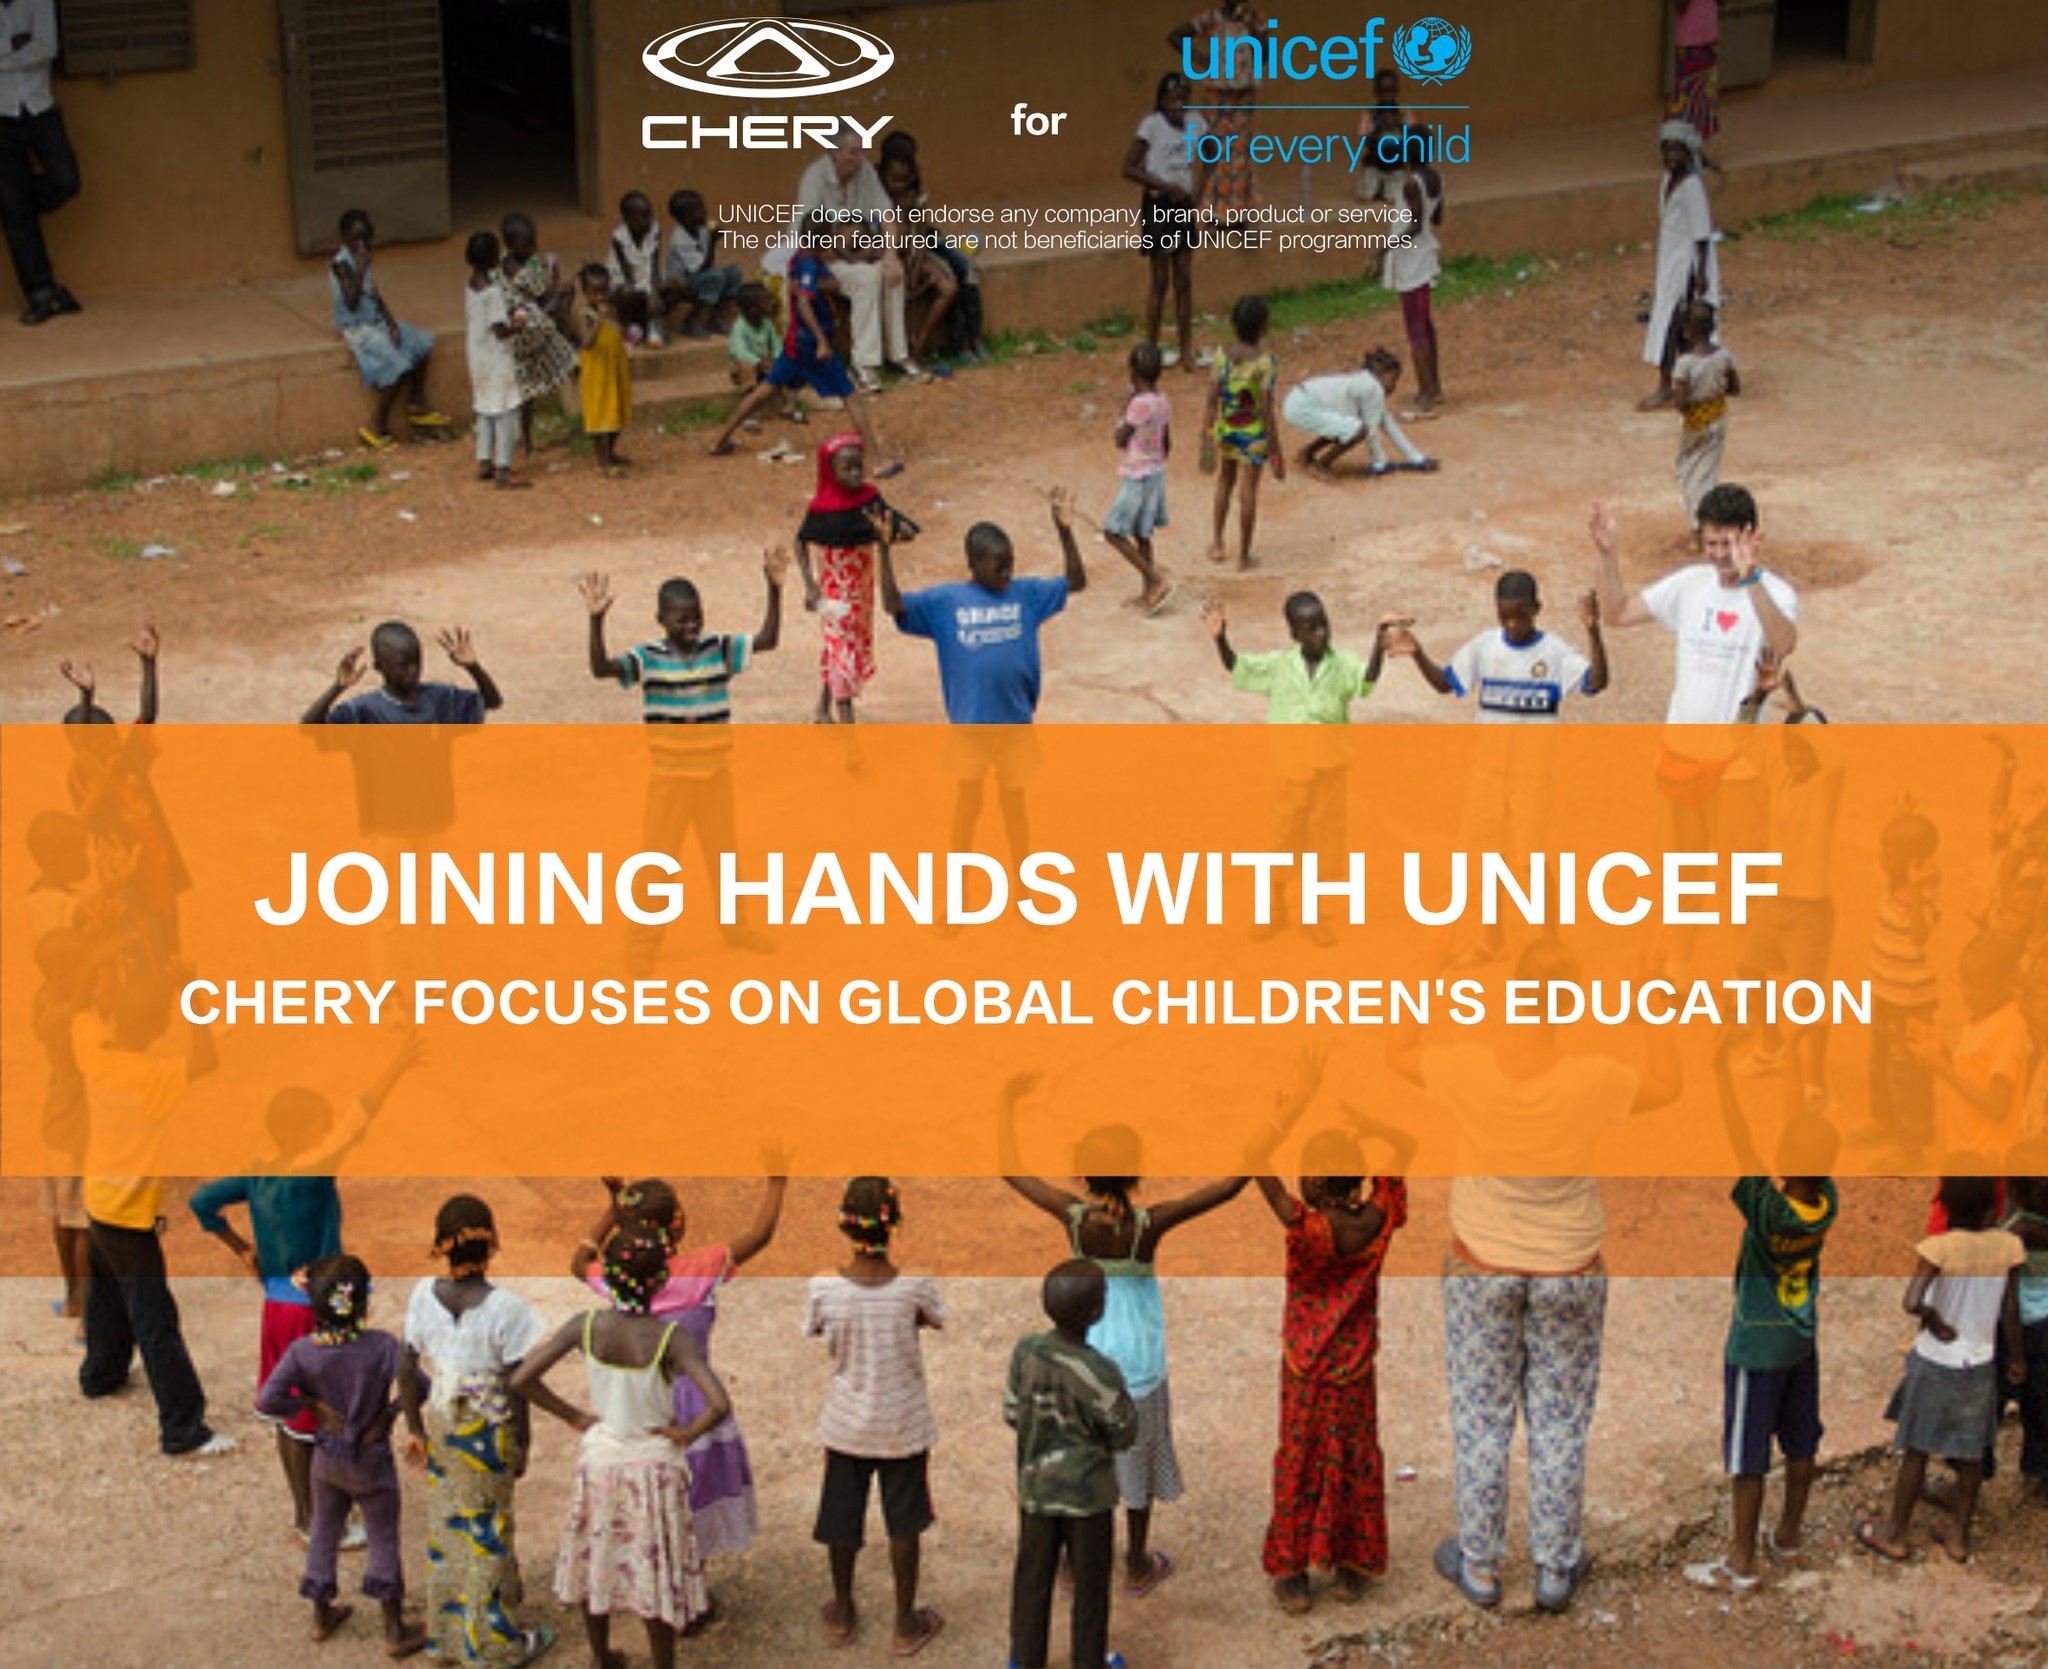 CHERY FAIT DON DE 6 MILLIONS DE DOLLARS À L'UNICEF